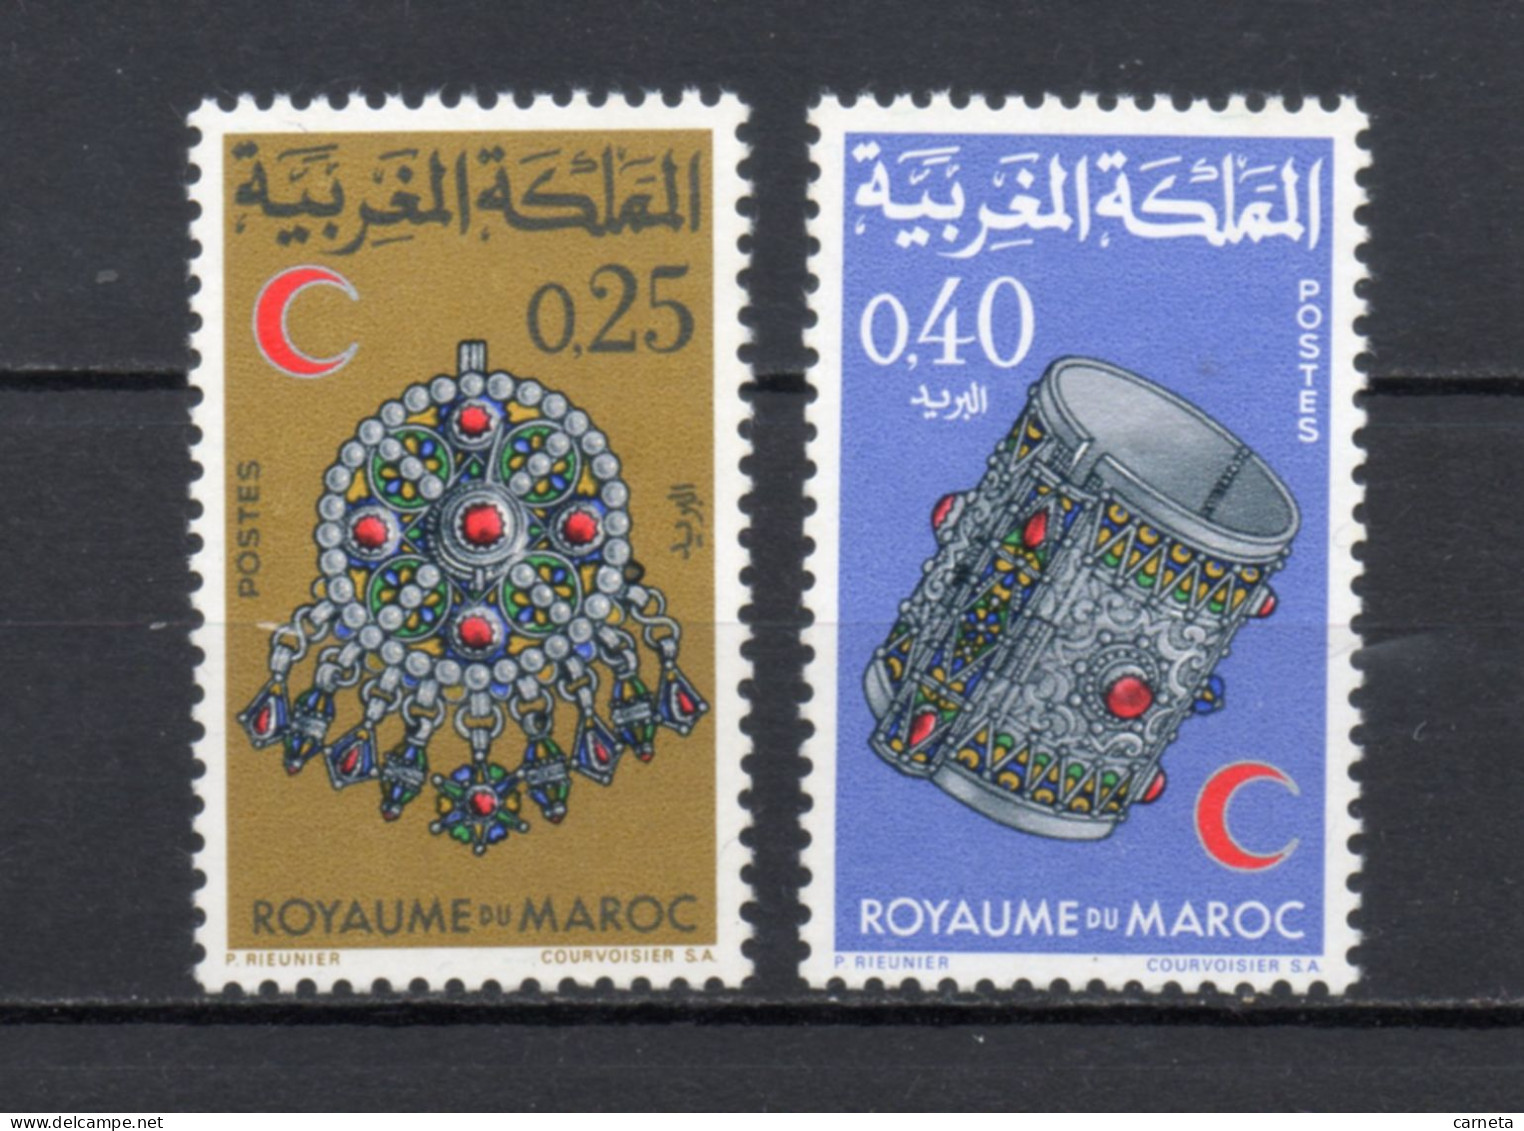 MAROC N°  557 + 558     NEUFS SANS CHARNIERE  COTE 3.00€     CROISSANT ROUGE - Maroc (1956-...)